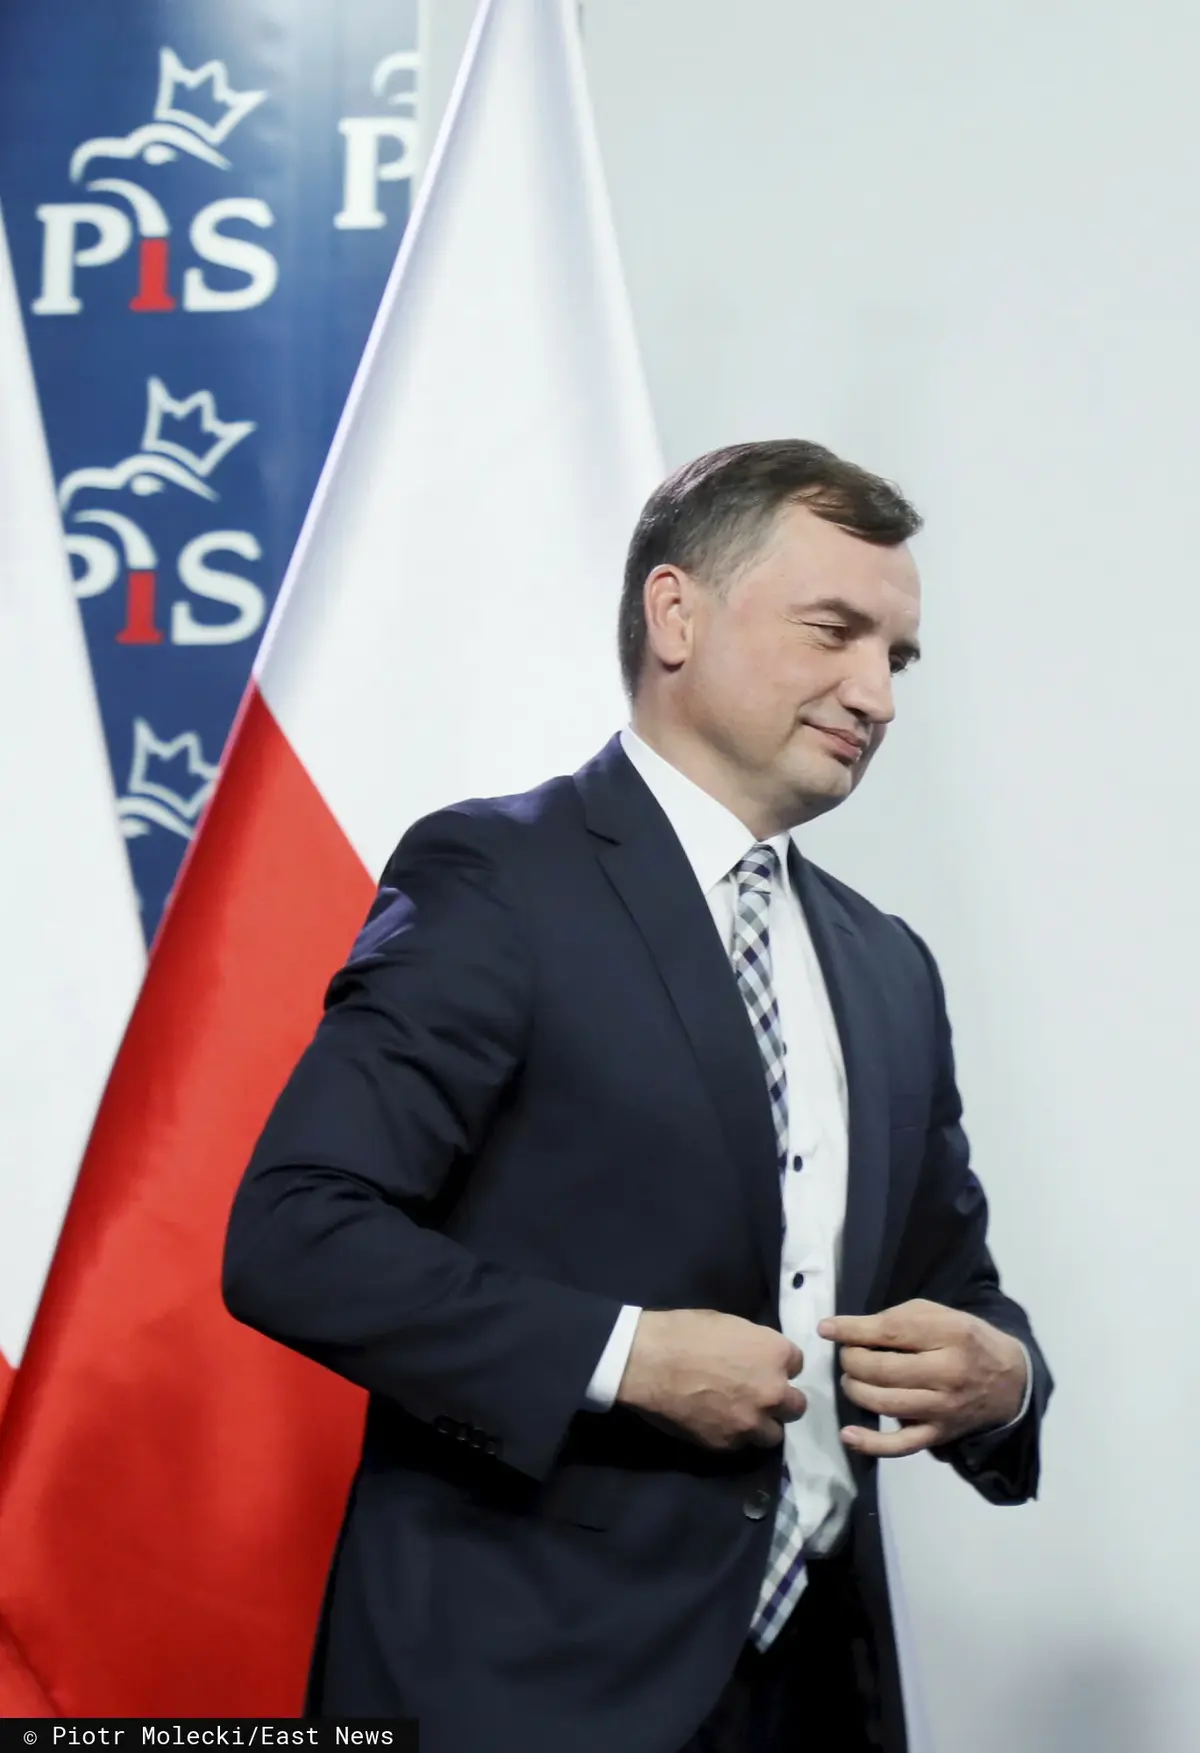 Zbigniew Ziobro zapinający marynarkę na tle flagi Polski i ścianki z logo PiS